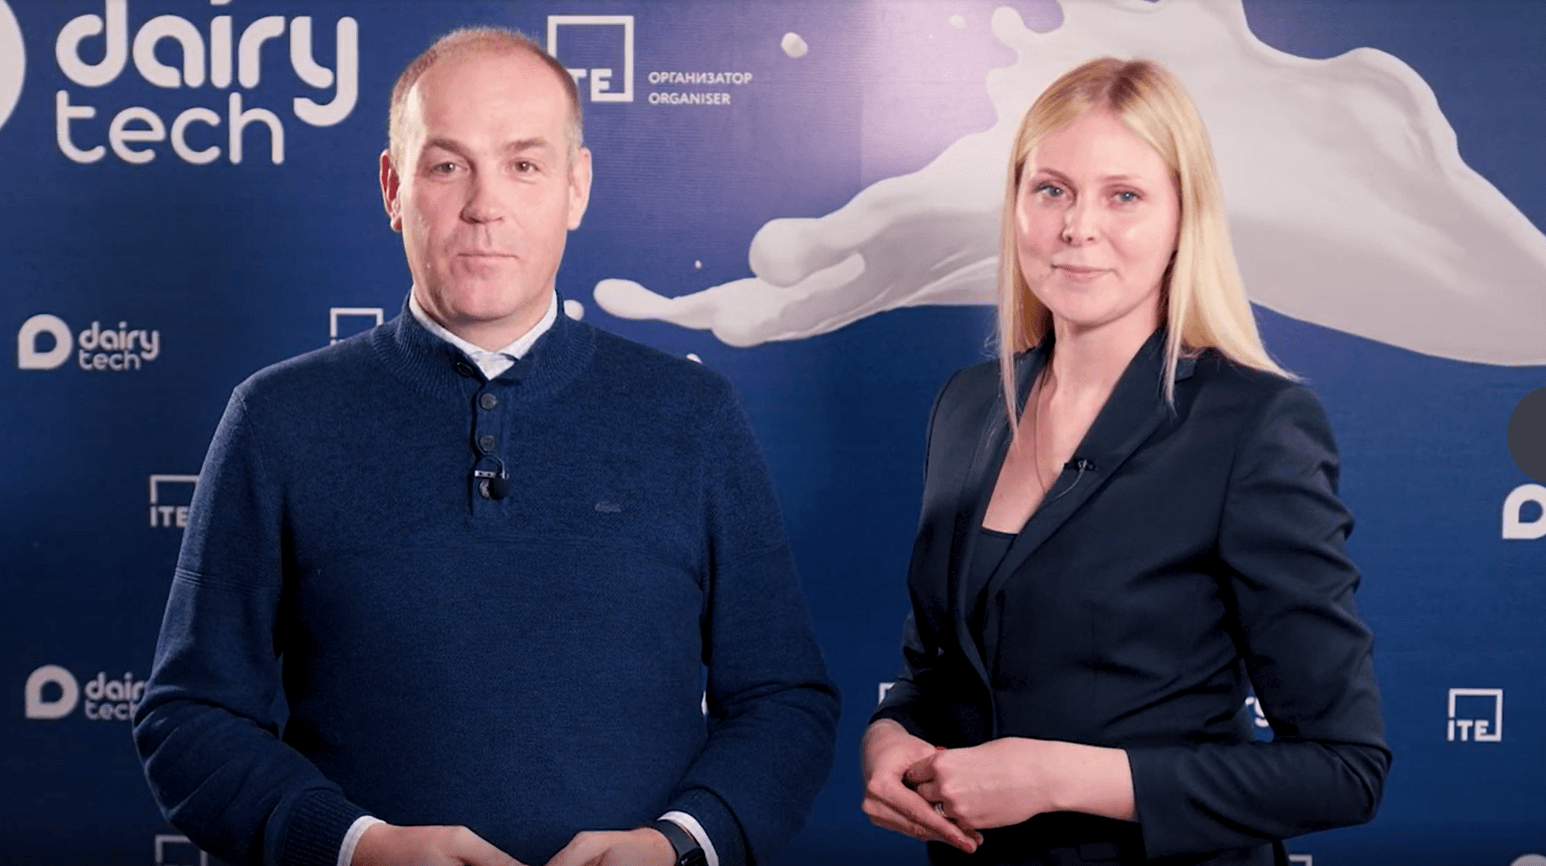 Видео-приглашение на выставку DairyTech от Юлии Марковой и Артема Белова